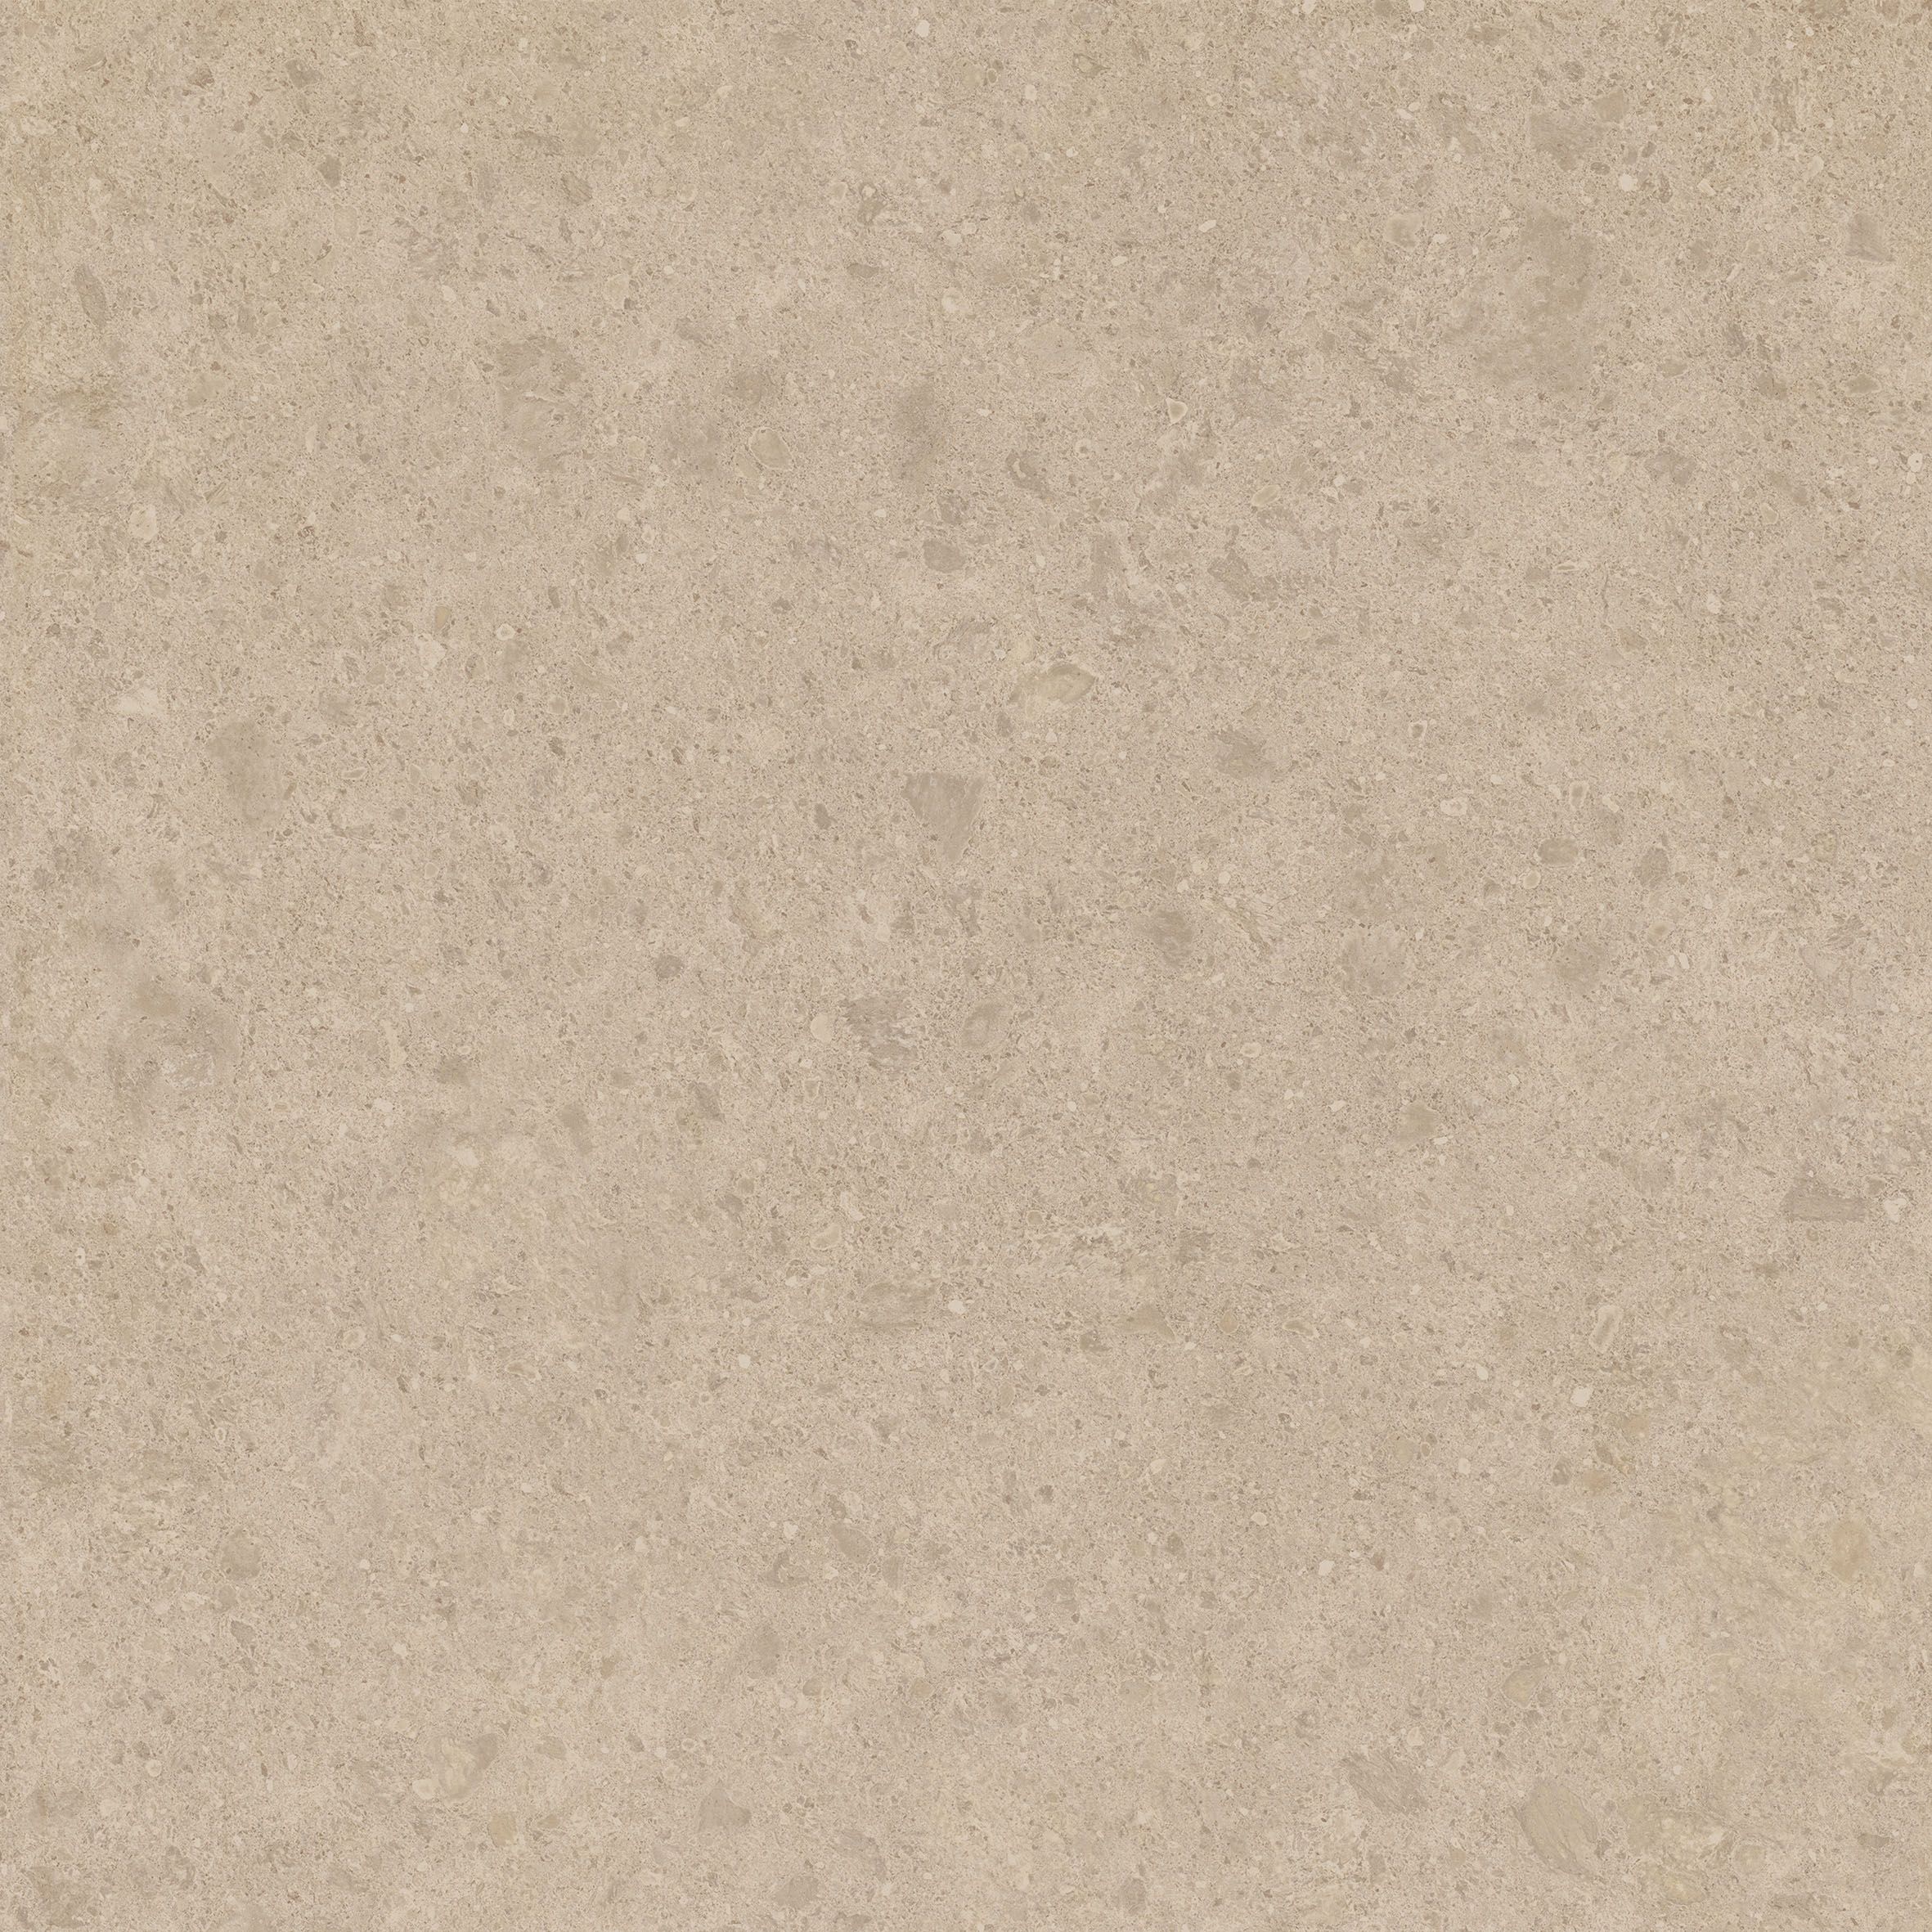 Плитка из керамогранита матовая Italon Дженезис 60x60 бежевый (610010001375) плитка из керамогранита матовая italon дженезис 7 2x60 серый 610130002154